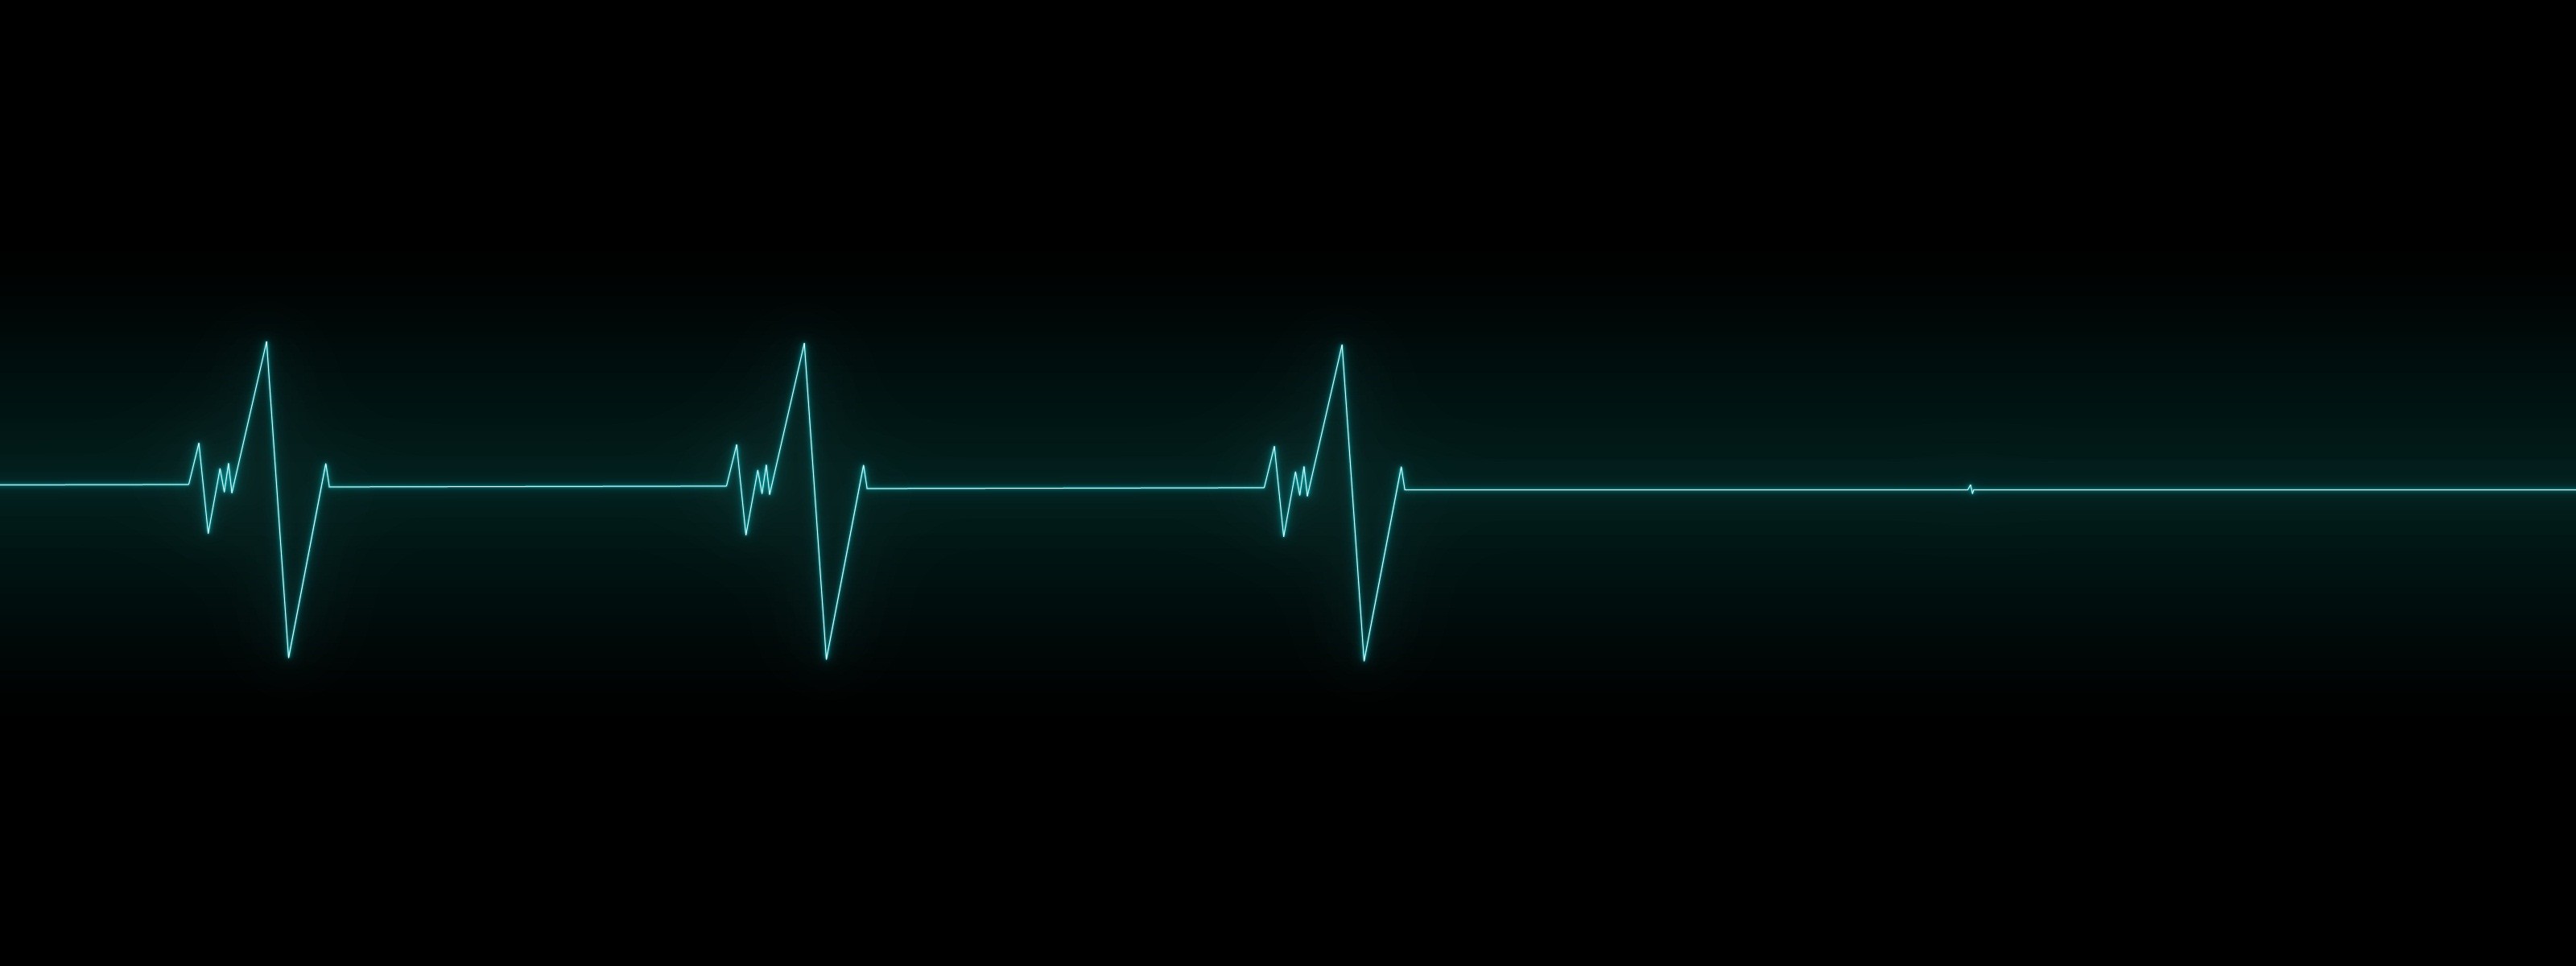 General 3200x1200 lines minimalism simple background EKG